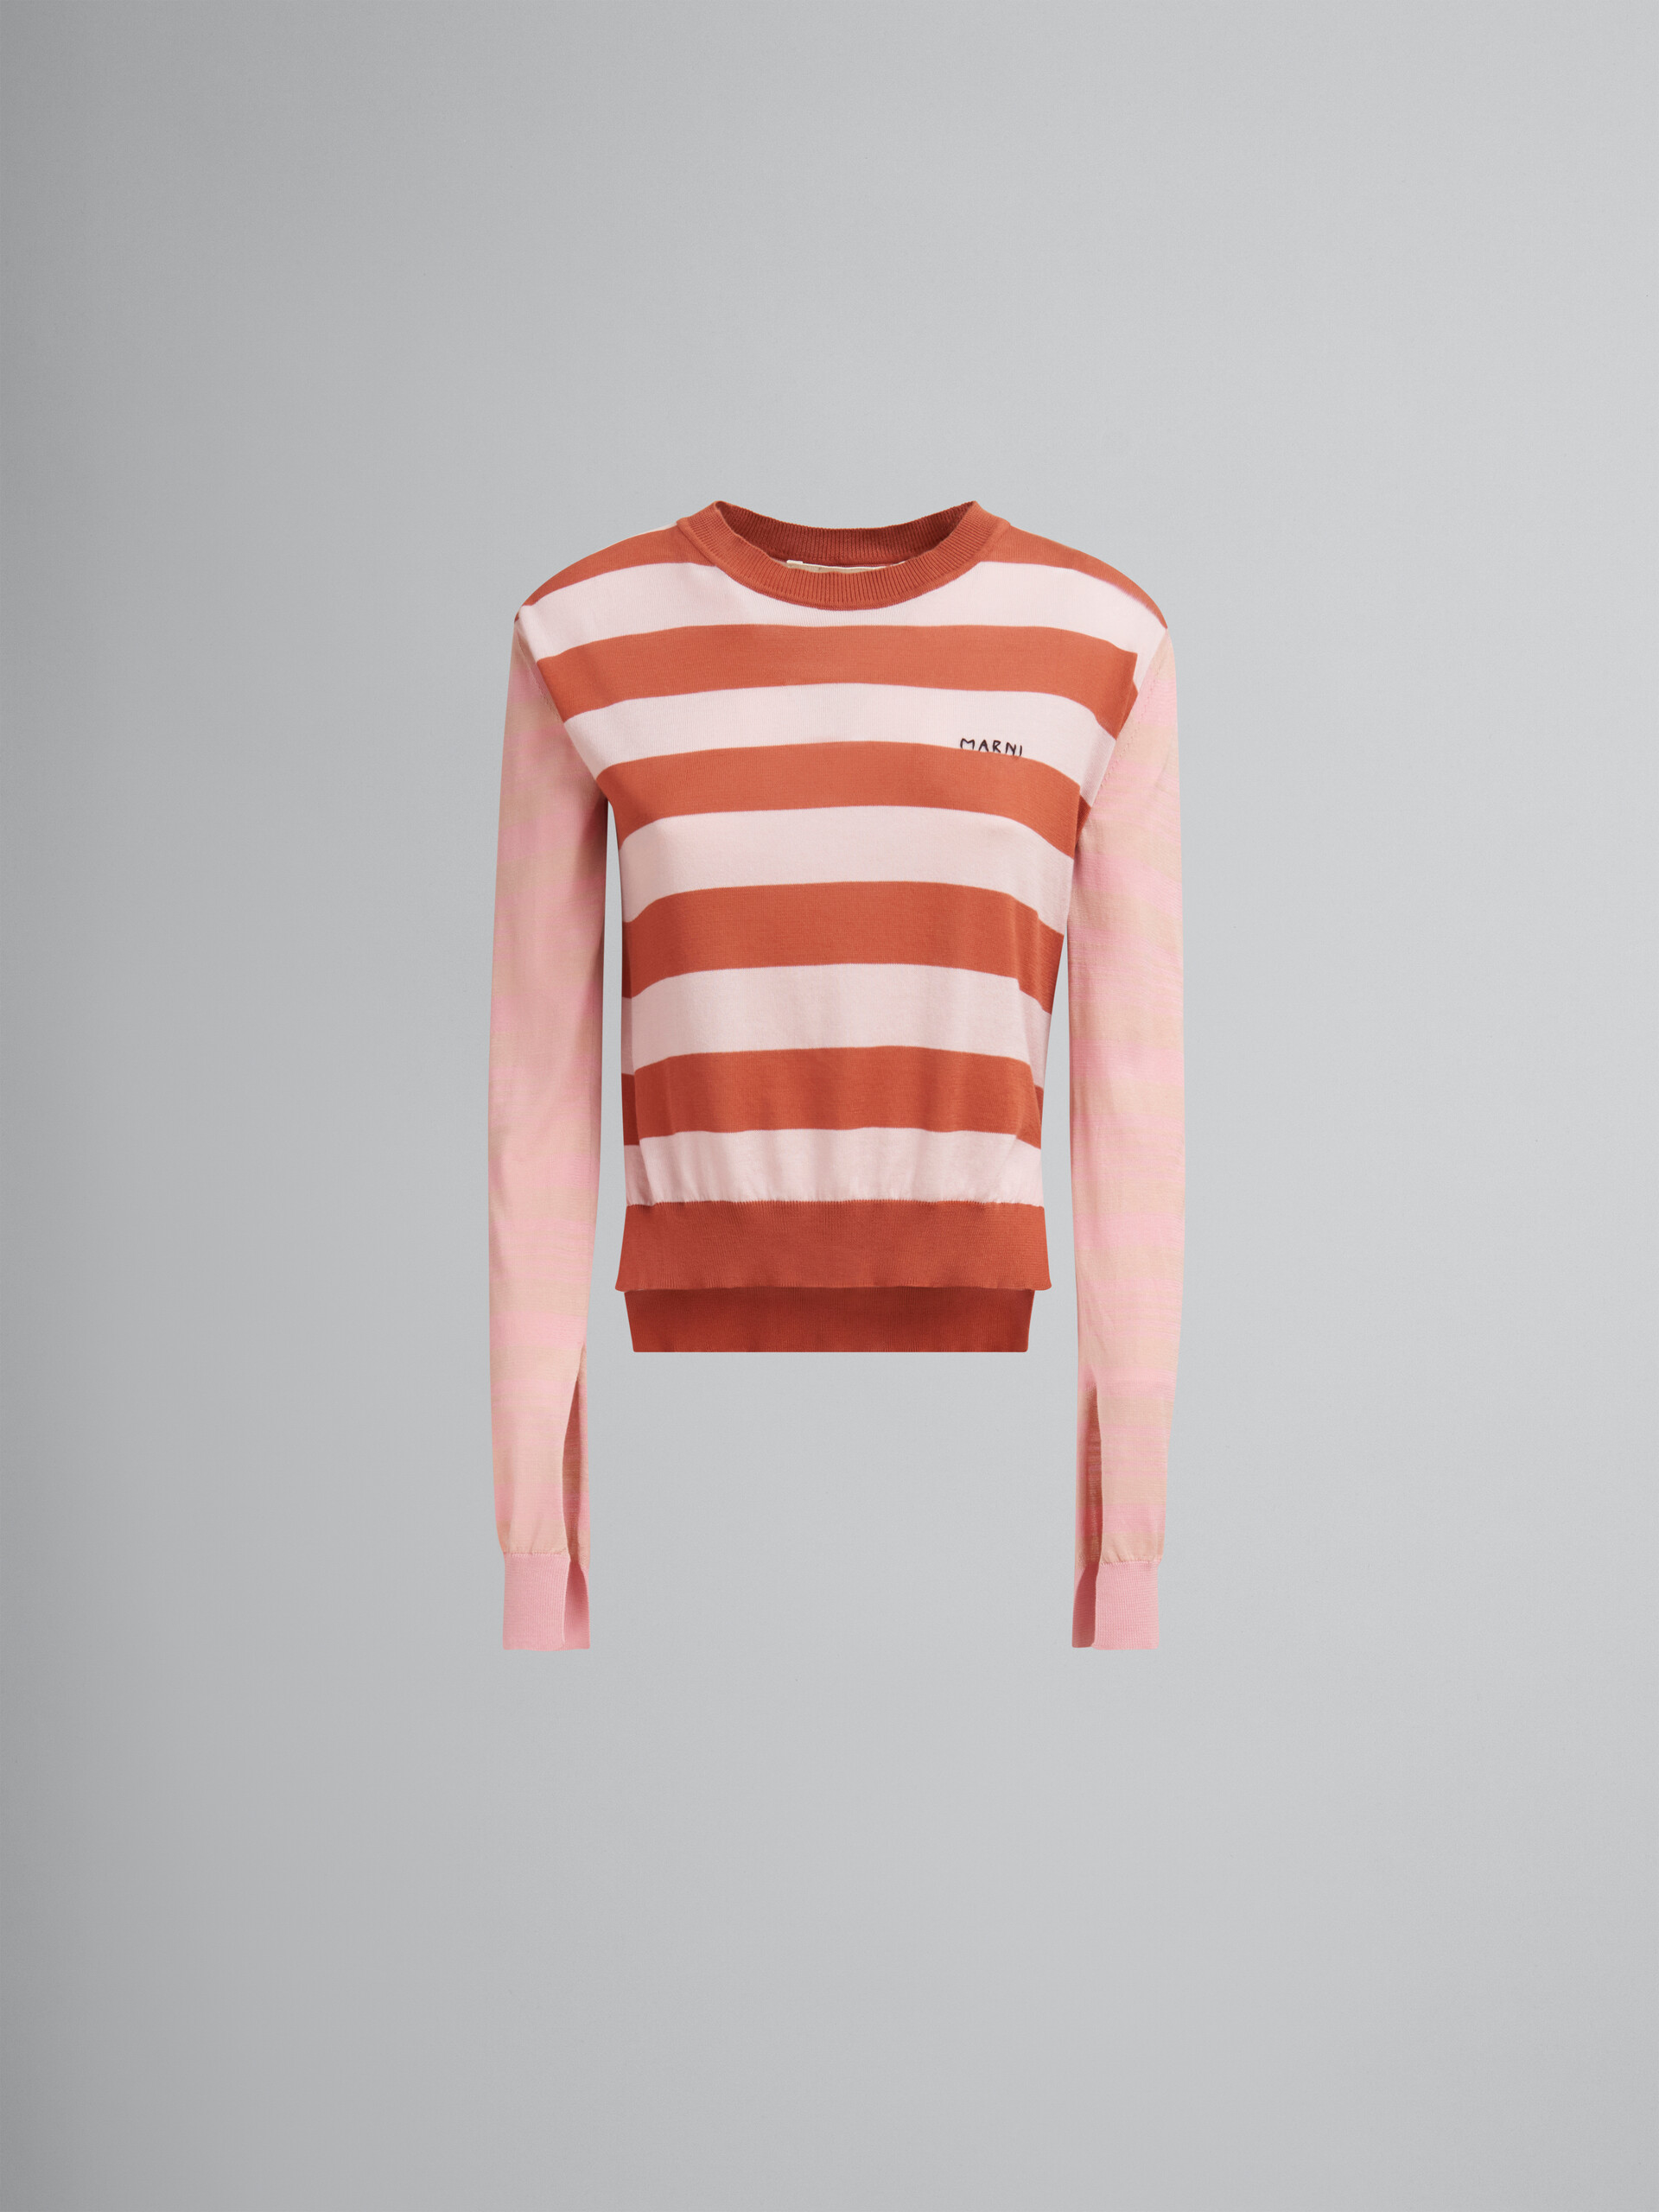 Rosafarbener, leichter Rundhalspullover aus Baumwolle mit kontrastierenden Streifen - Pullover - Image 1